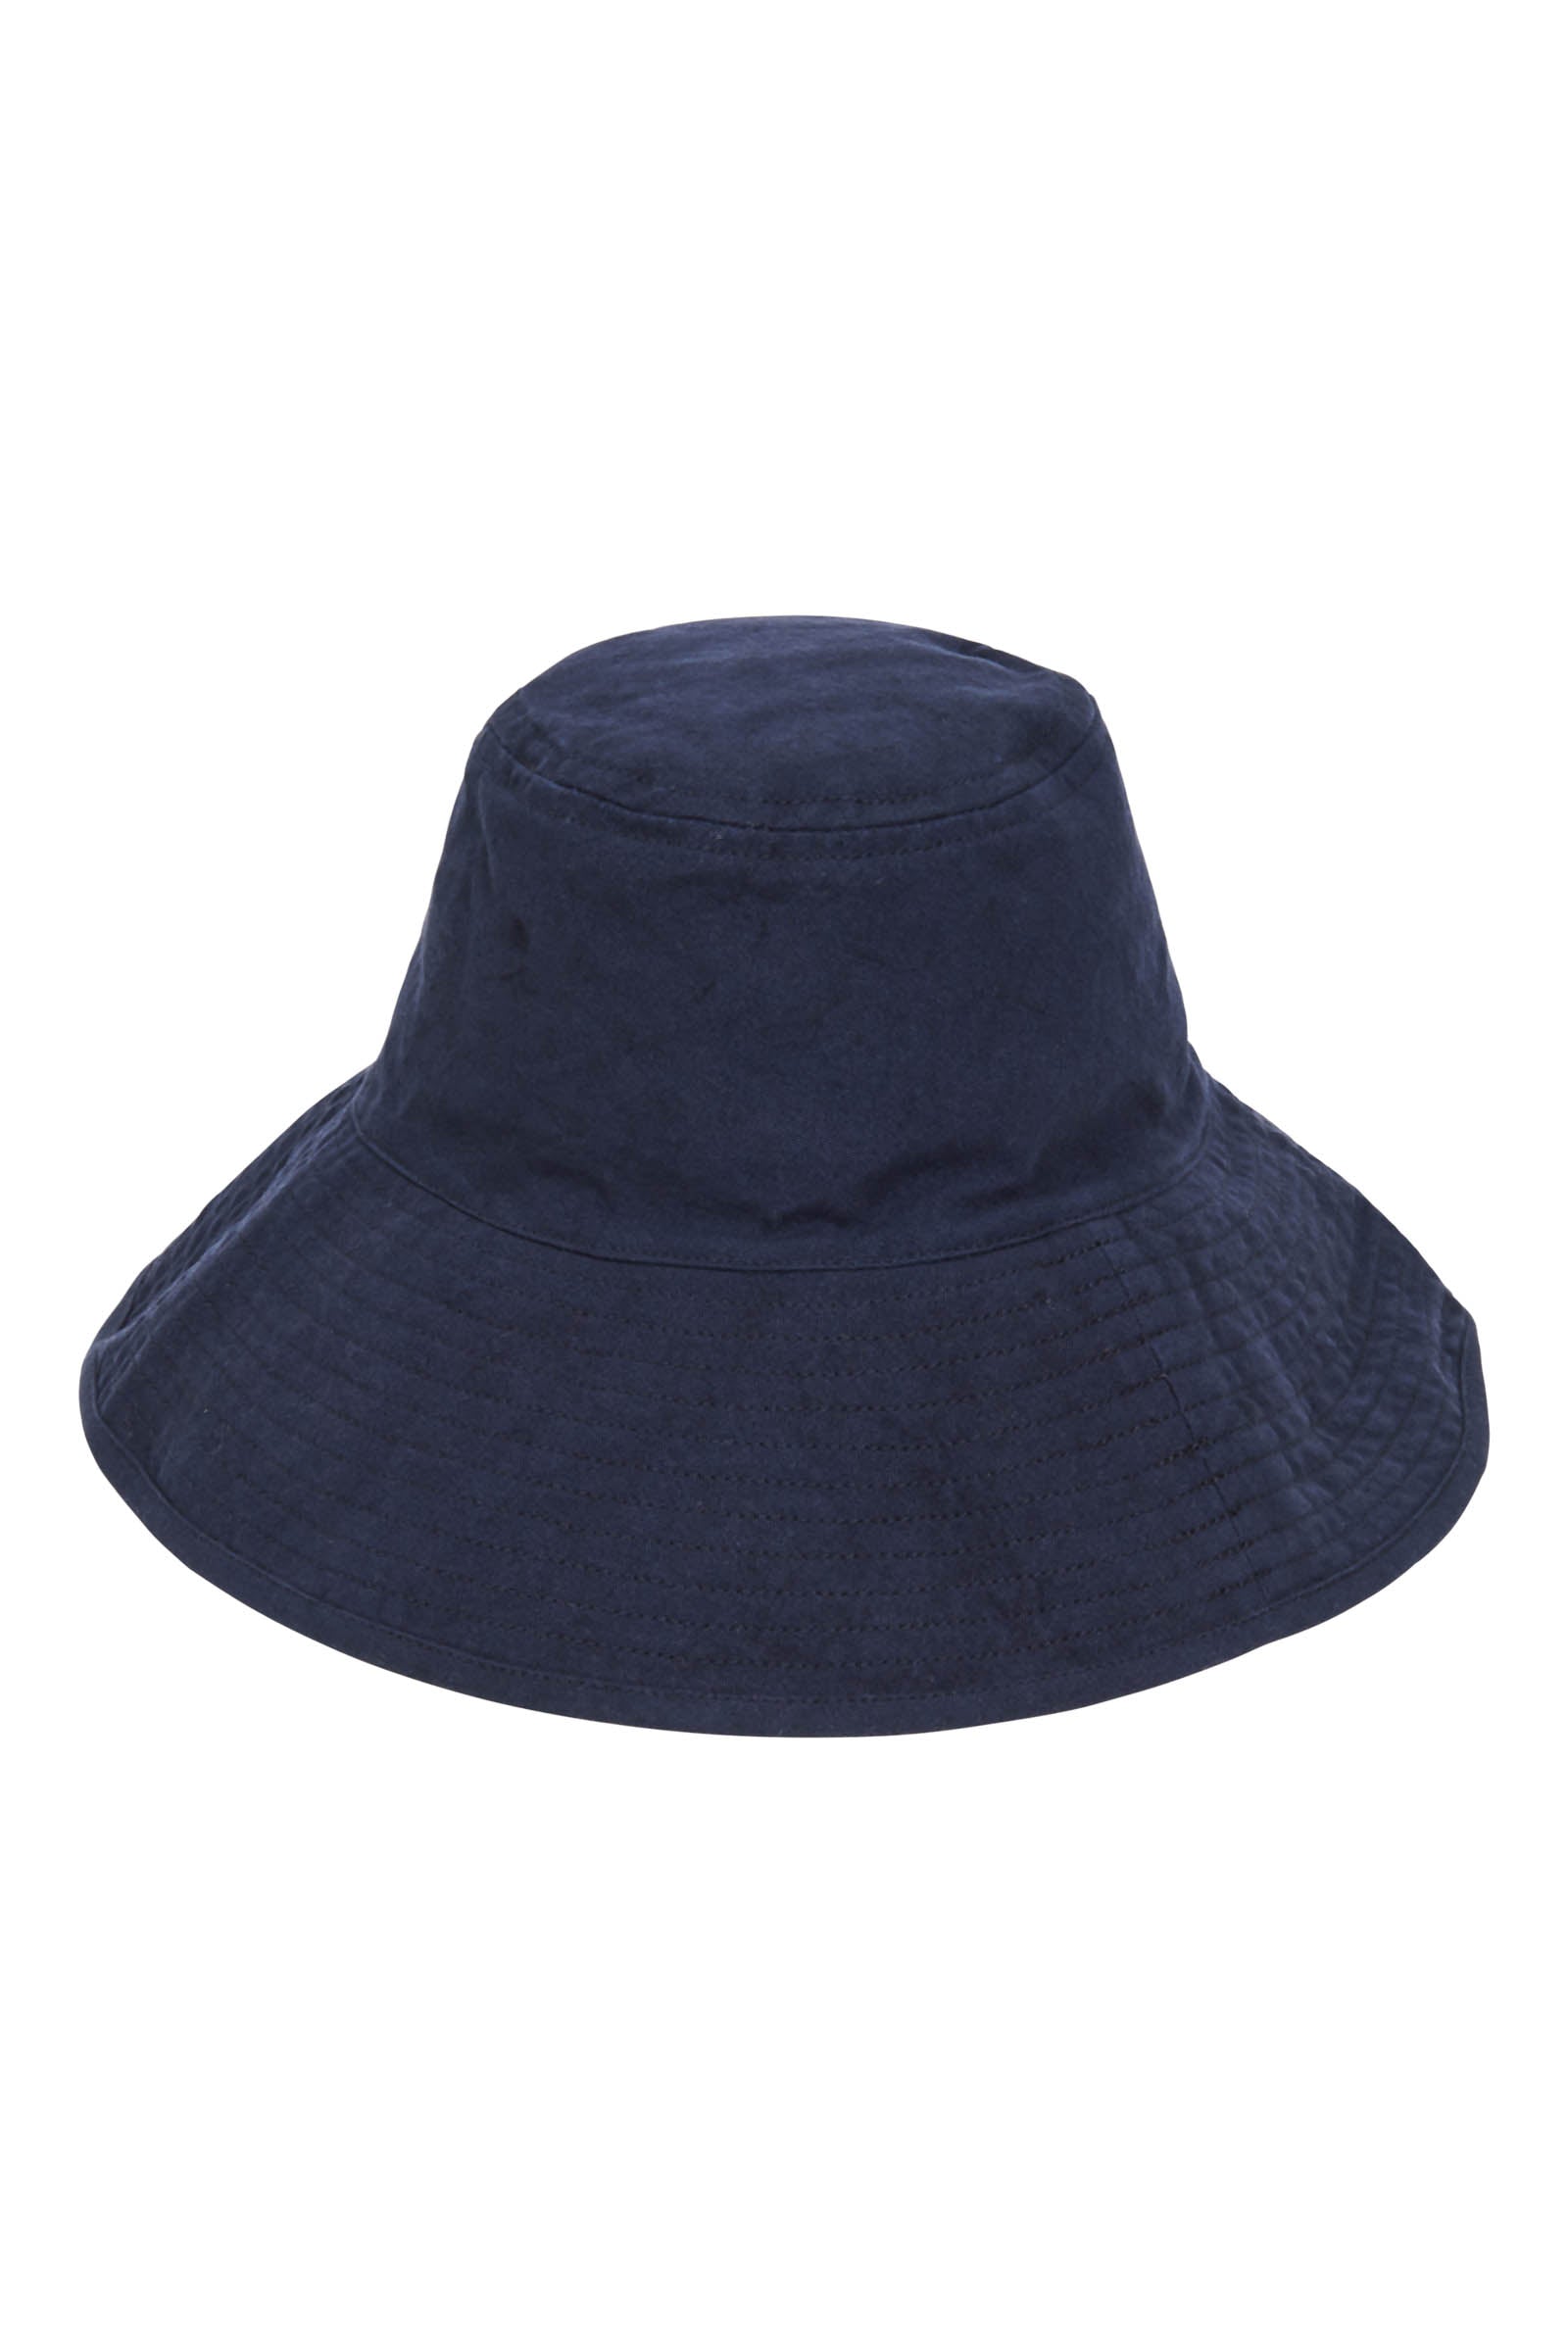 La Vie Hat - Sapphire - eb&ive Hat